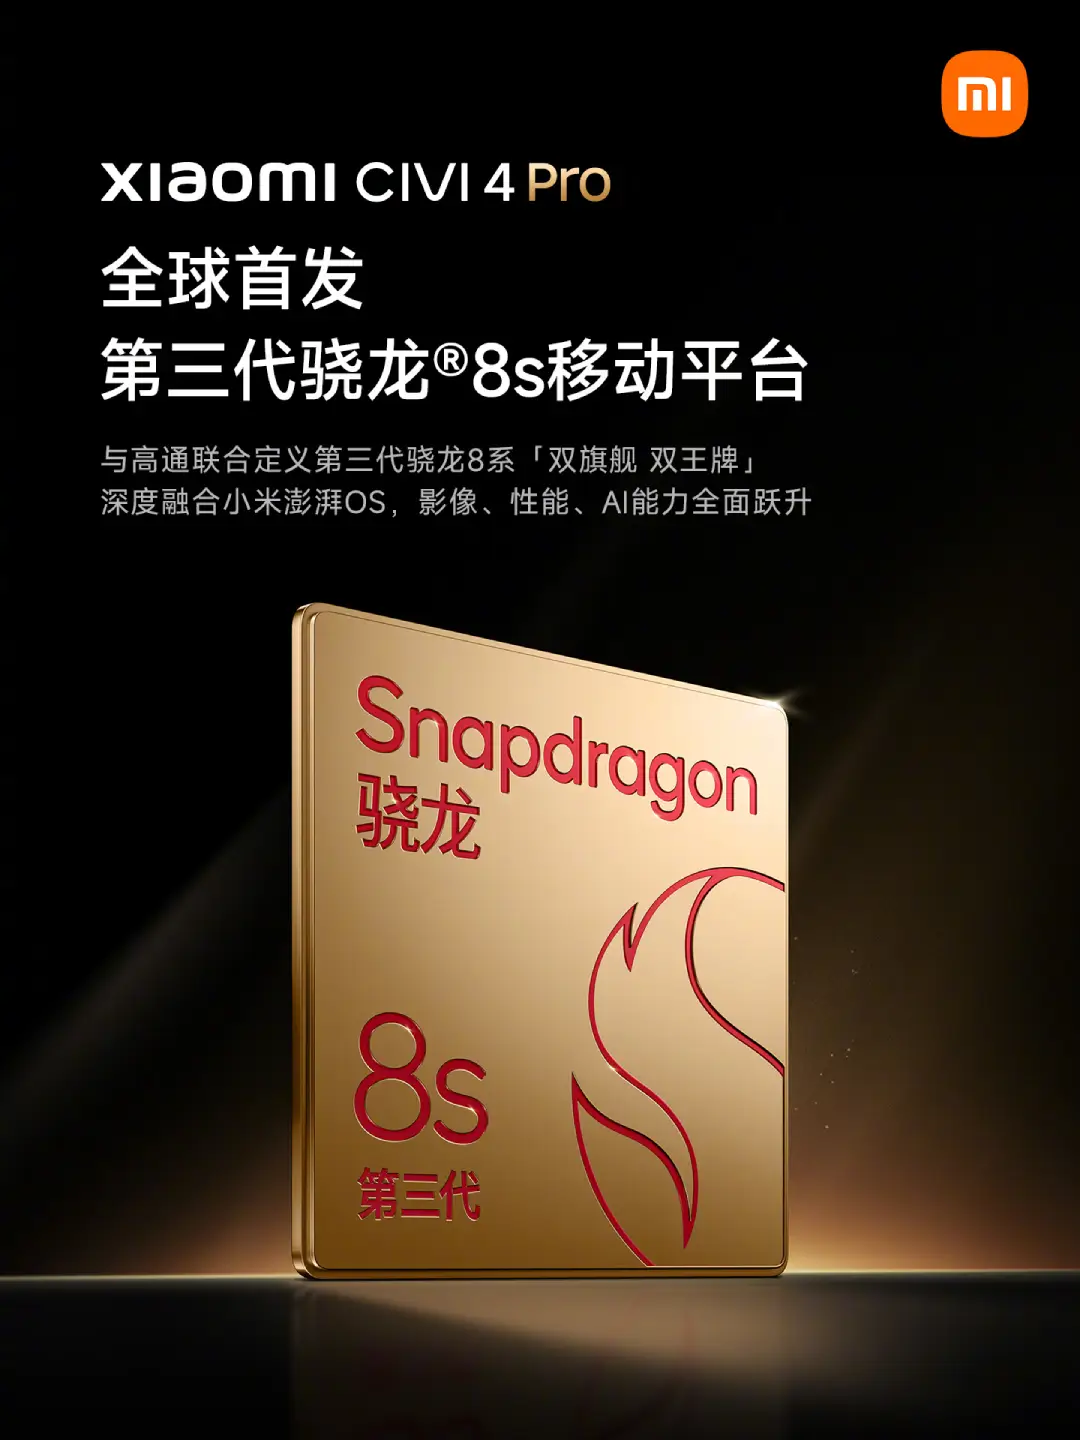 Snapdragon 8s Gen 3 lesz a Xiaomi CIVI 4 Pro-ban és Redmi-ben